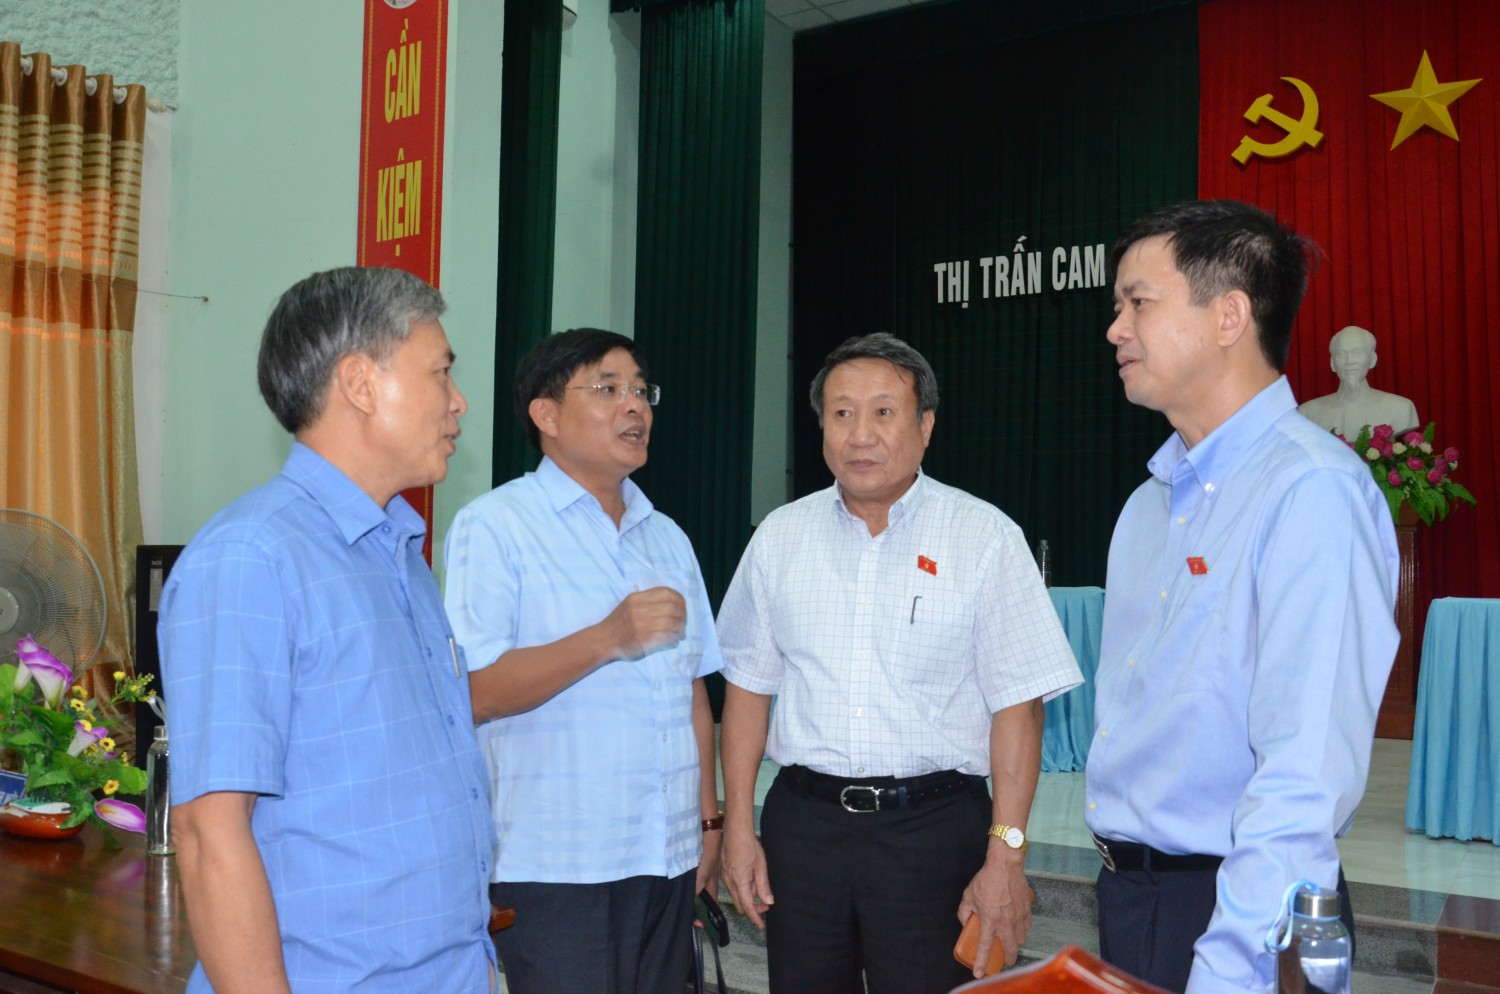 Các đại biểu Quốc hội Lê Quang Tùng, Hà Sỹ Đồng trao đổi bên lề hội nghị tiếp xúc cử tri với lãnh đạo huyện Cam Lộ về những giải pháp thúc đẩy phát triển KT - XH địa phương - Ảnh: Lê Minh